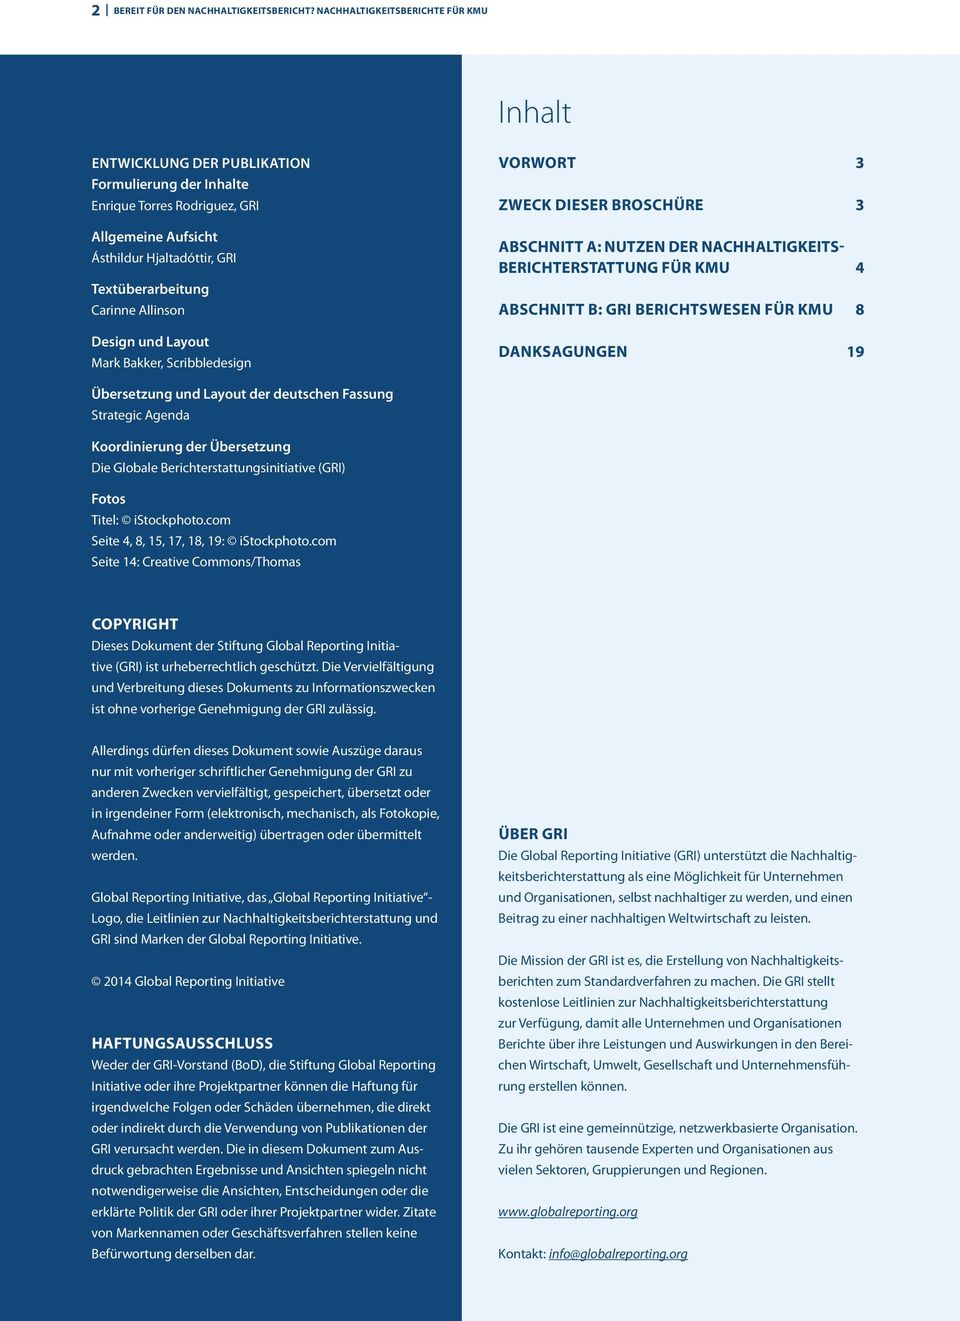 Allinson Design und Layout Mark Bakker, Scribbledesign Vorwort 3 Zweck dieser Broschüre 3 Abschnitt A: Nutzen der Nachhaltigkeitsberichterstattung für KMU 4 Abschnitt B: GRI Berichtswesen für KMU 8